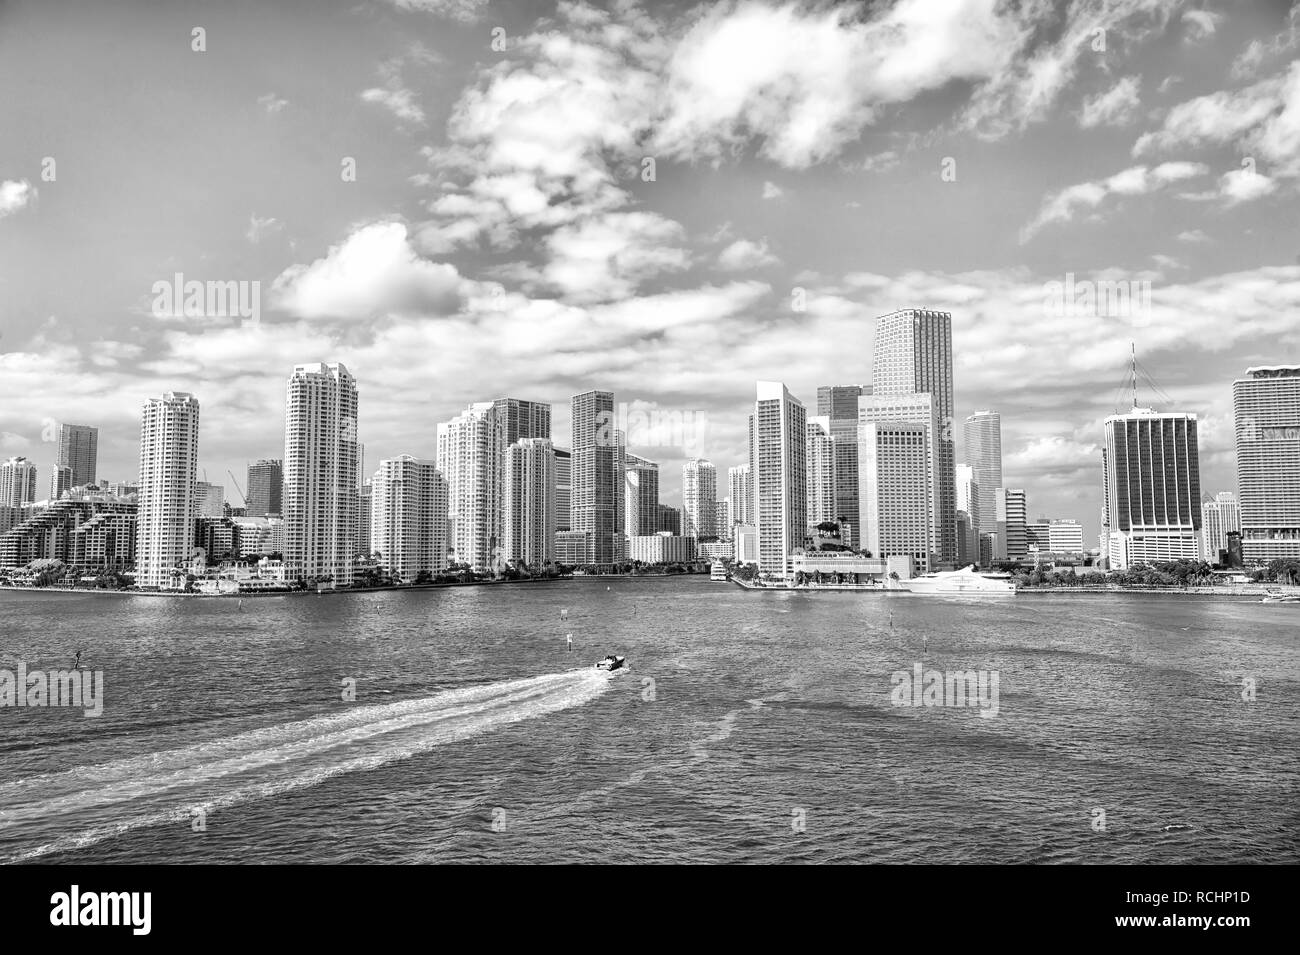 Vue aérienne de gratte-ciel de Miami avec bleu ciel nuageux,voile blanc à côté du centre-ville de Miami en Floride. City skyline Banque D'Images